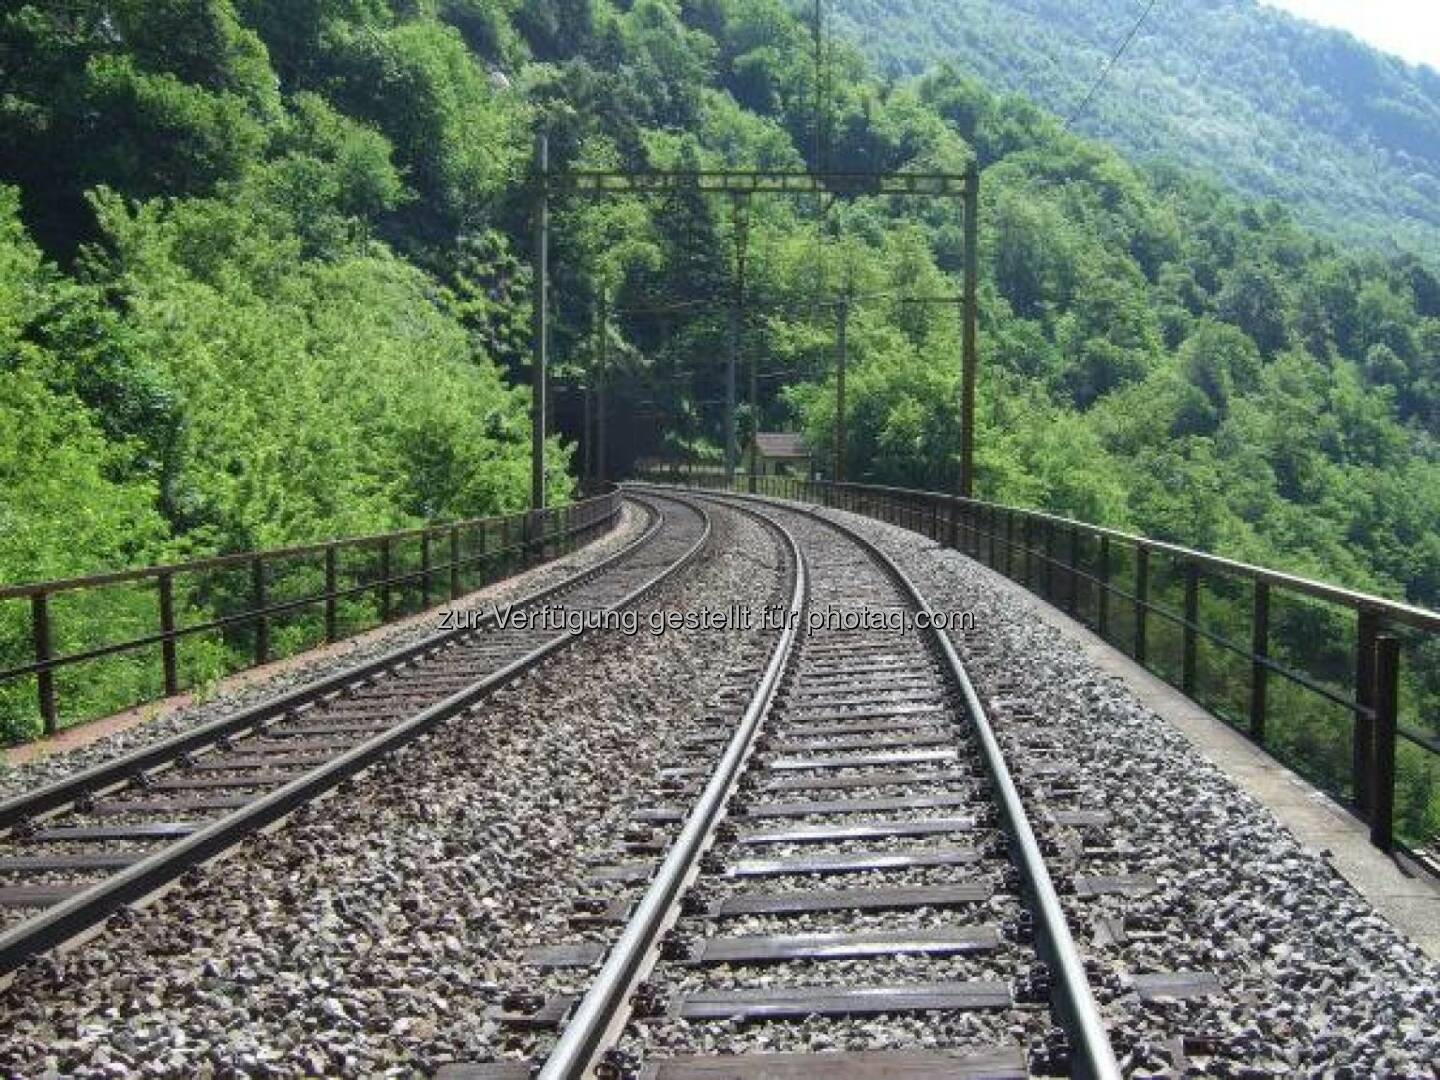 Gemeinsam mit den Schweizerischen Bundesbahnen testet die voestalpine Schienen die neueste Schienengeneration. Die Sihltal Zürich Uetliberg Bahn setzt bereits seit 2012 auf die wärmebehandelten Schienen. http://bit.ly/1beOaG1